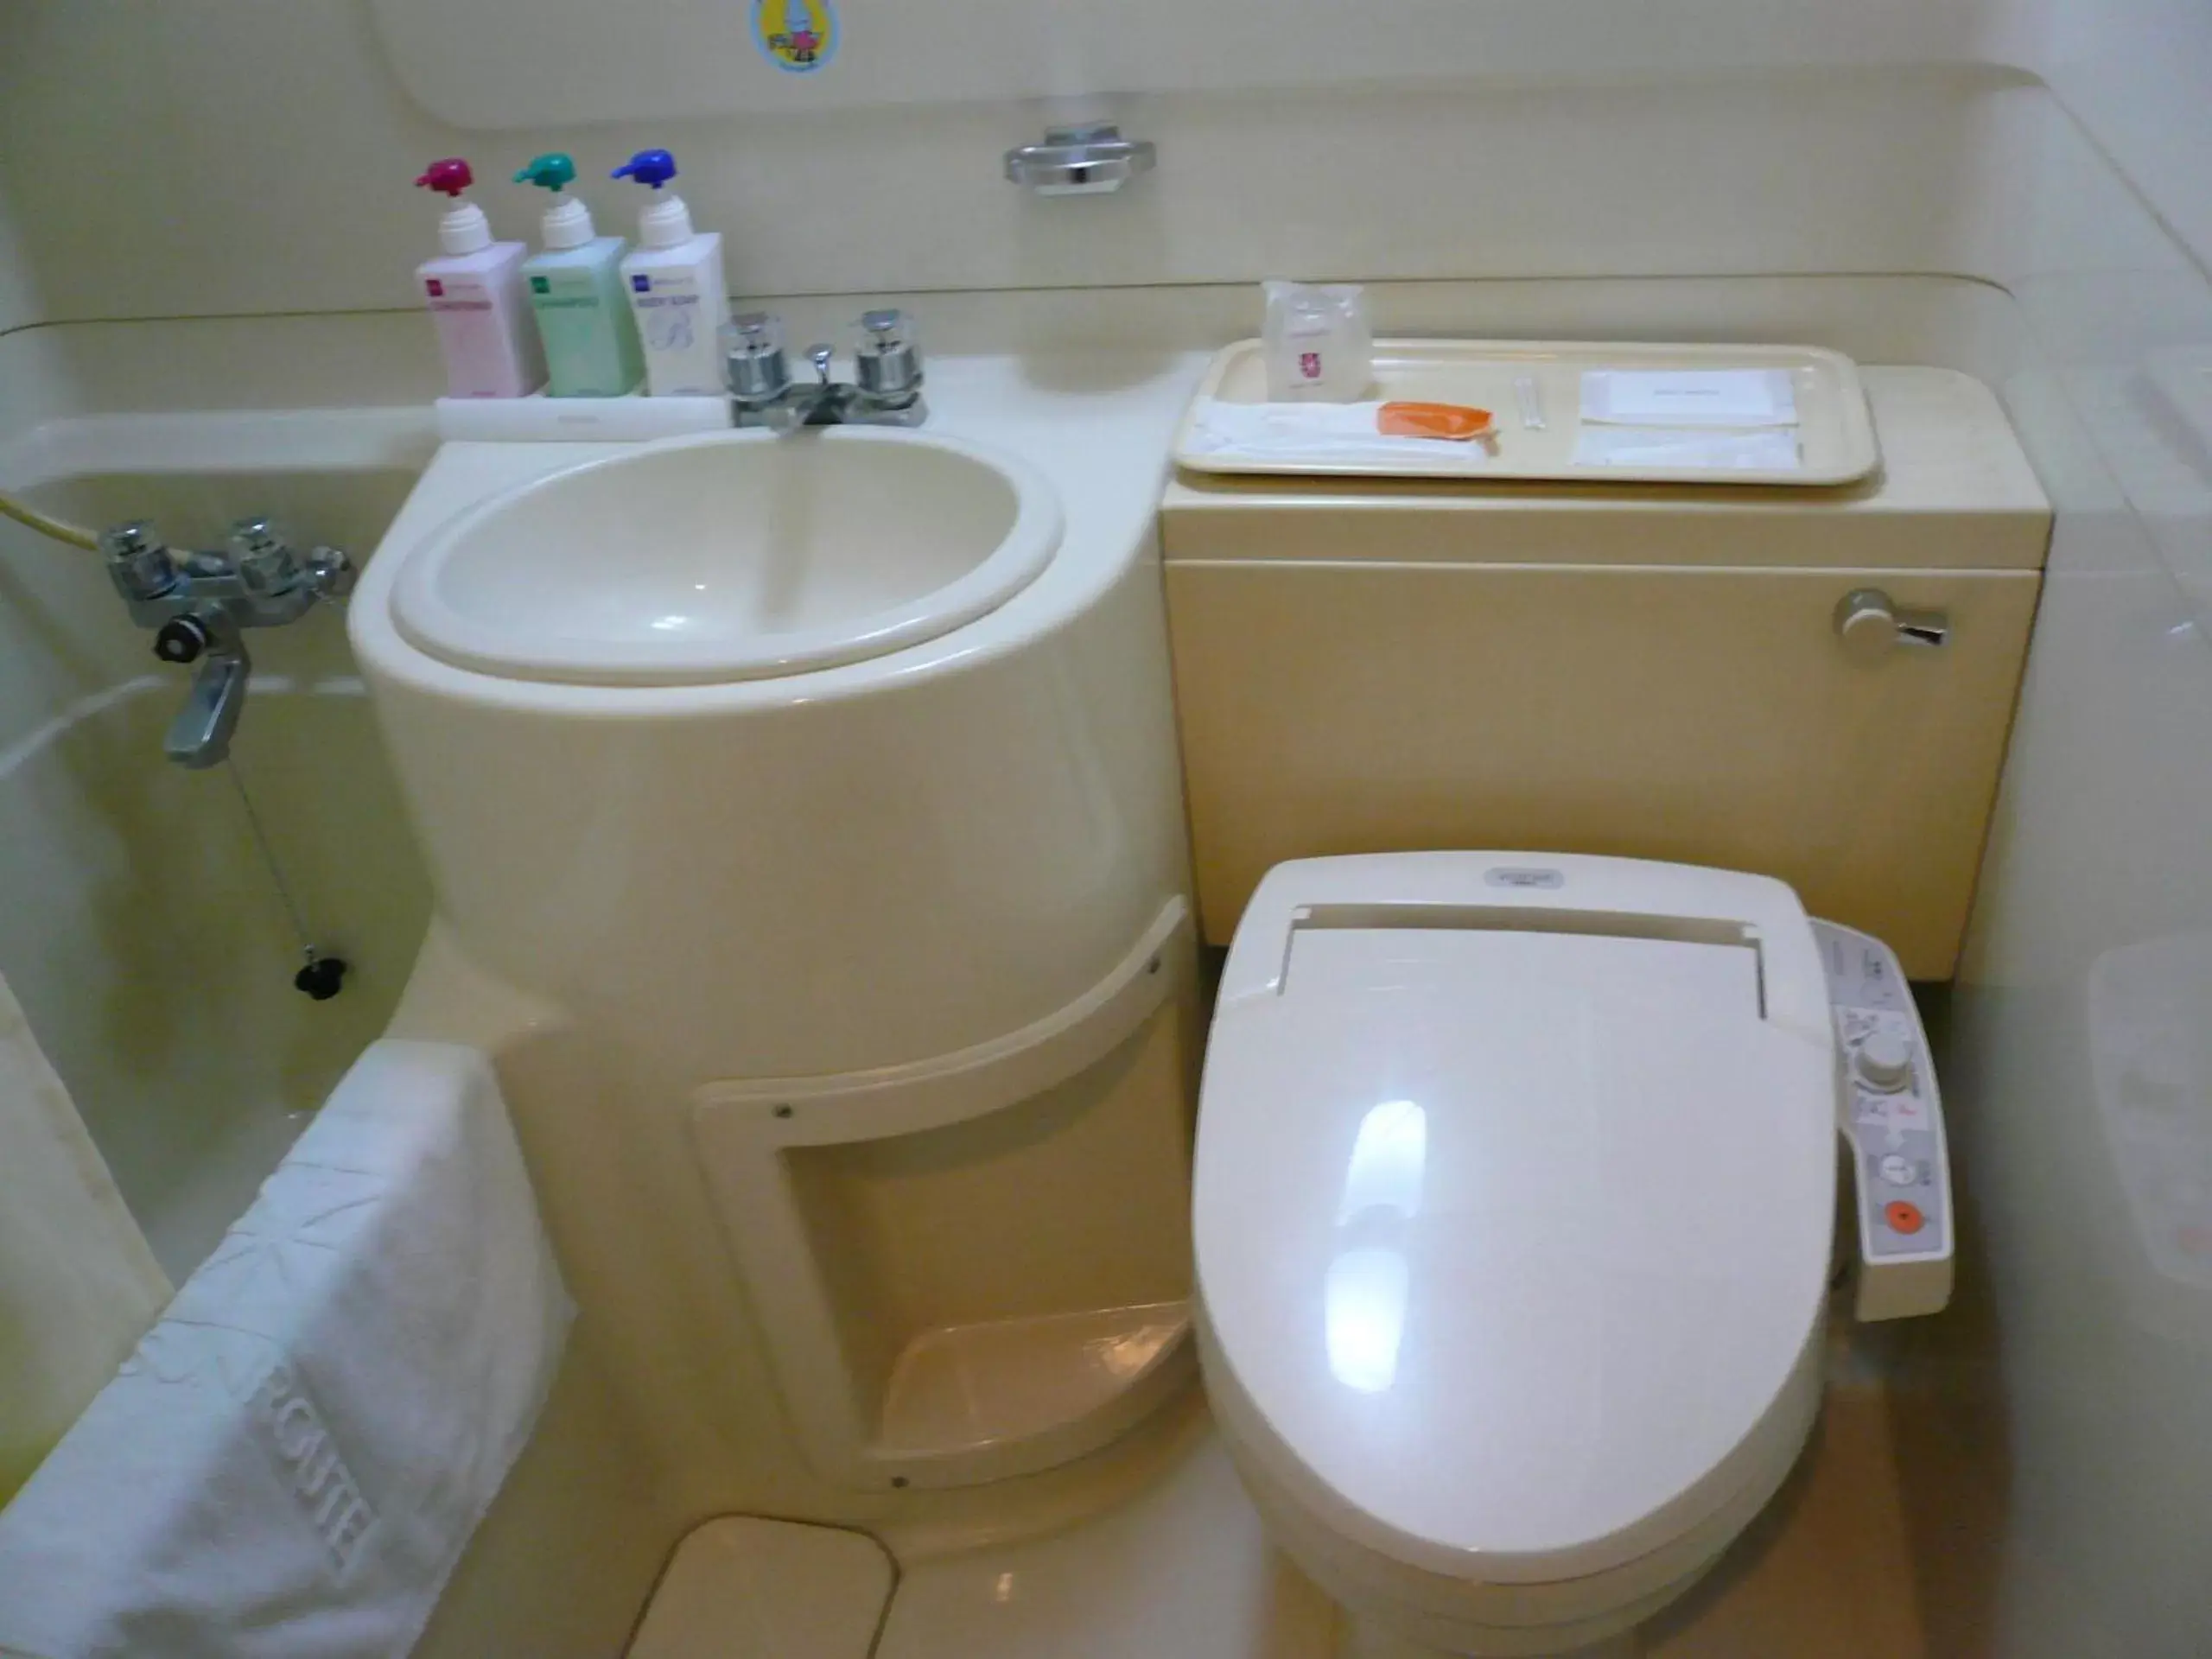 Bathroom in Hotel Sunroute Matsuyama